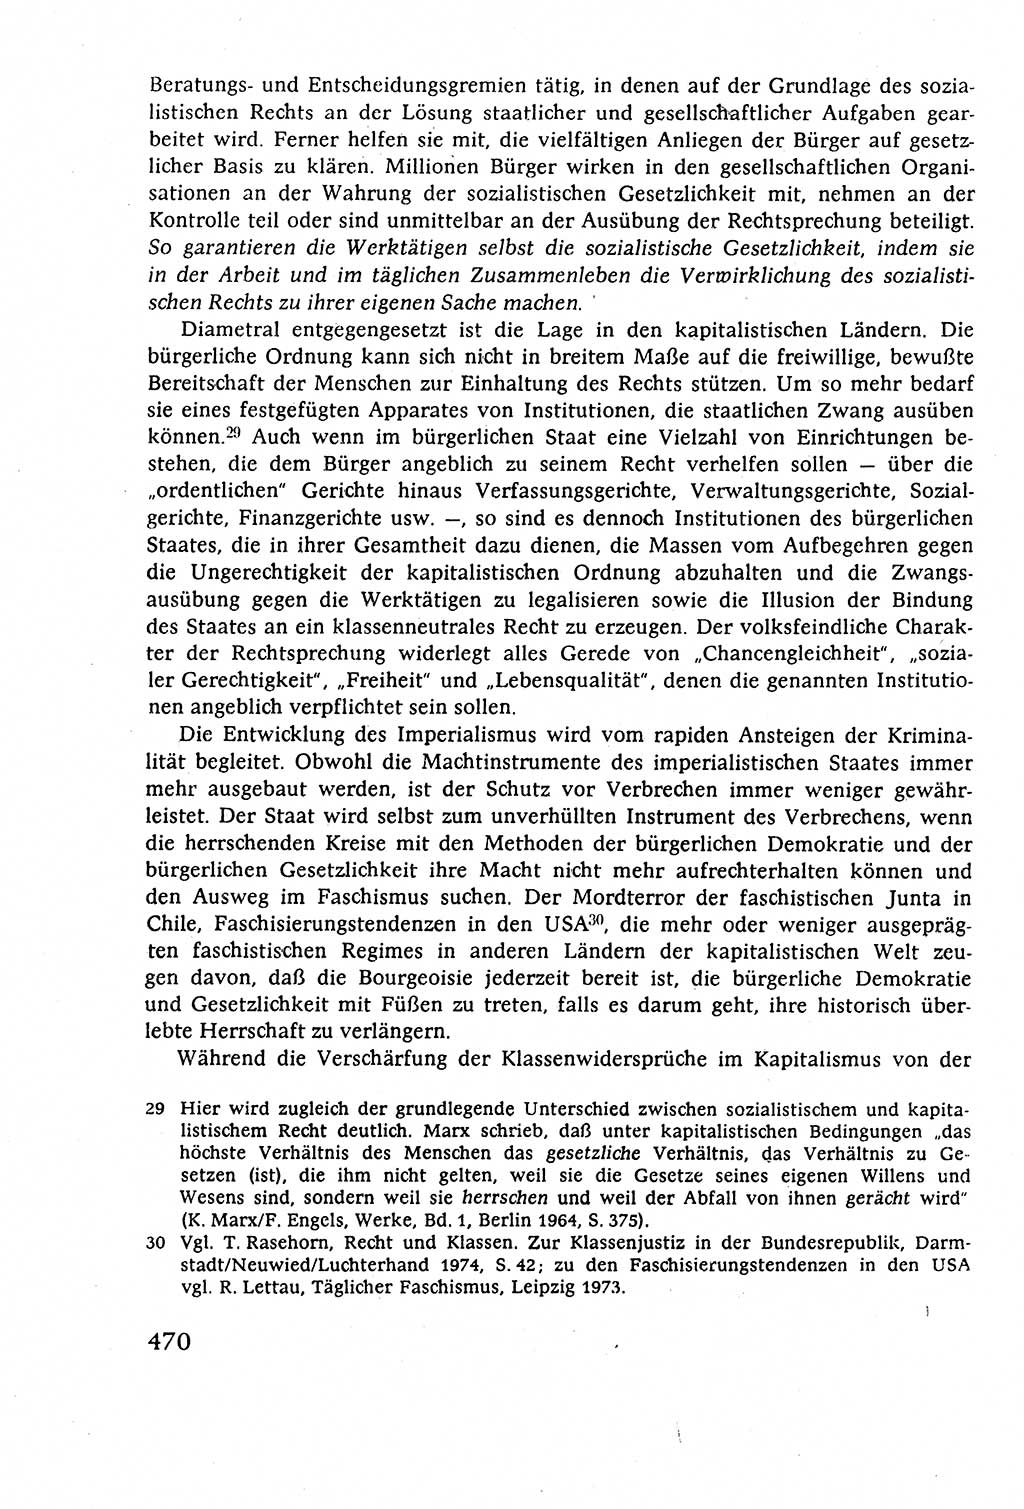 Staatsrecht der DDR (Deutsche Demokratische Republik), Lehrbuch 1977, Seite 470 (St.-R. DDR Lb. 1977, S. 470)